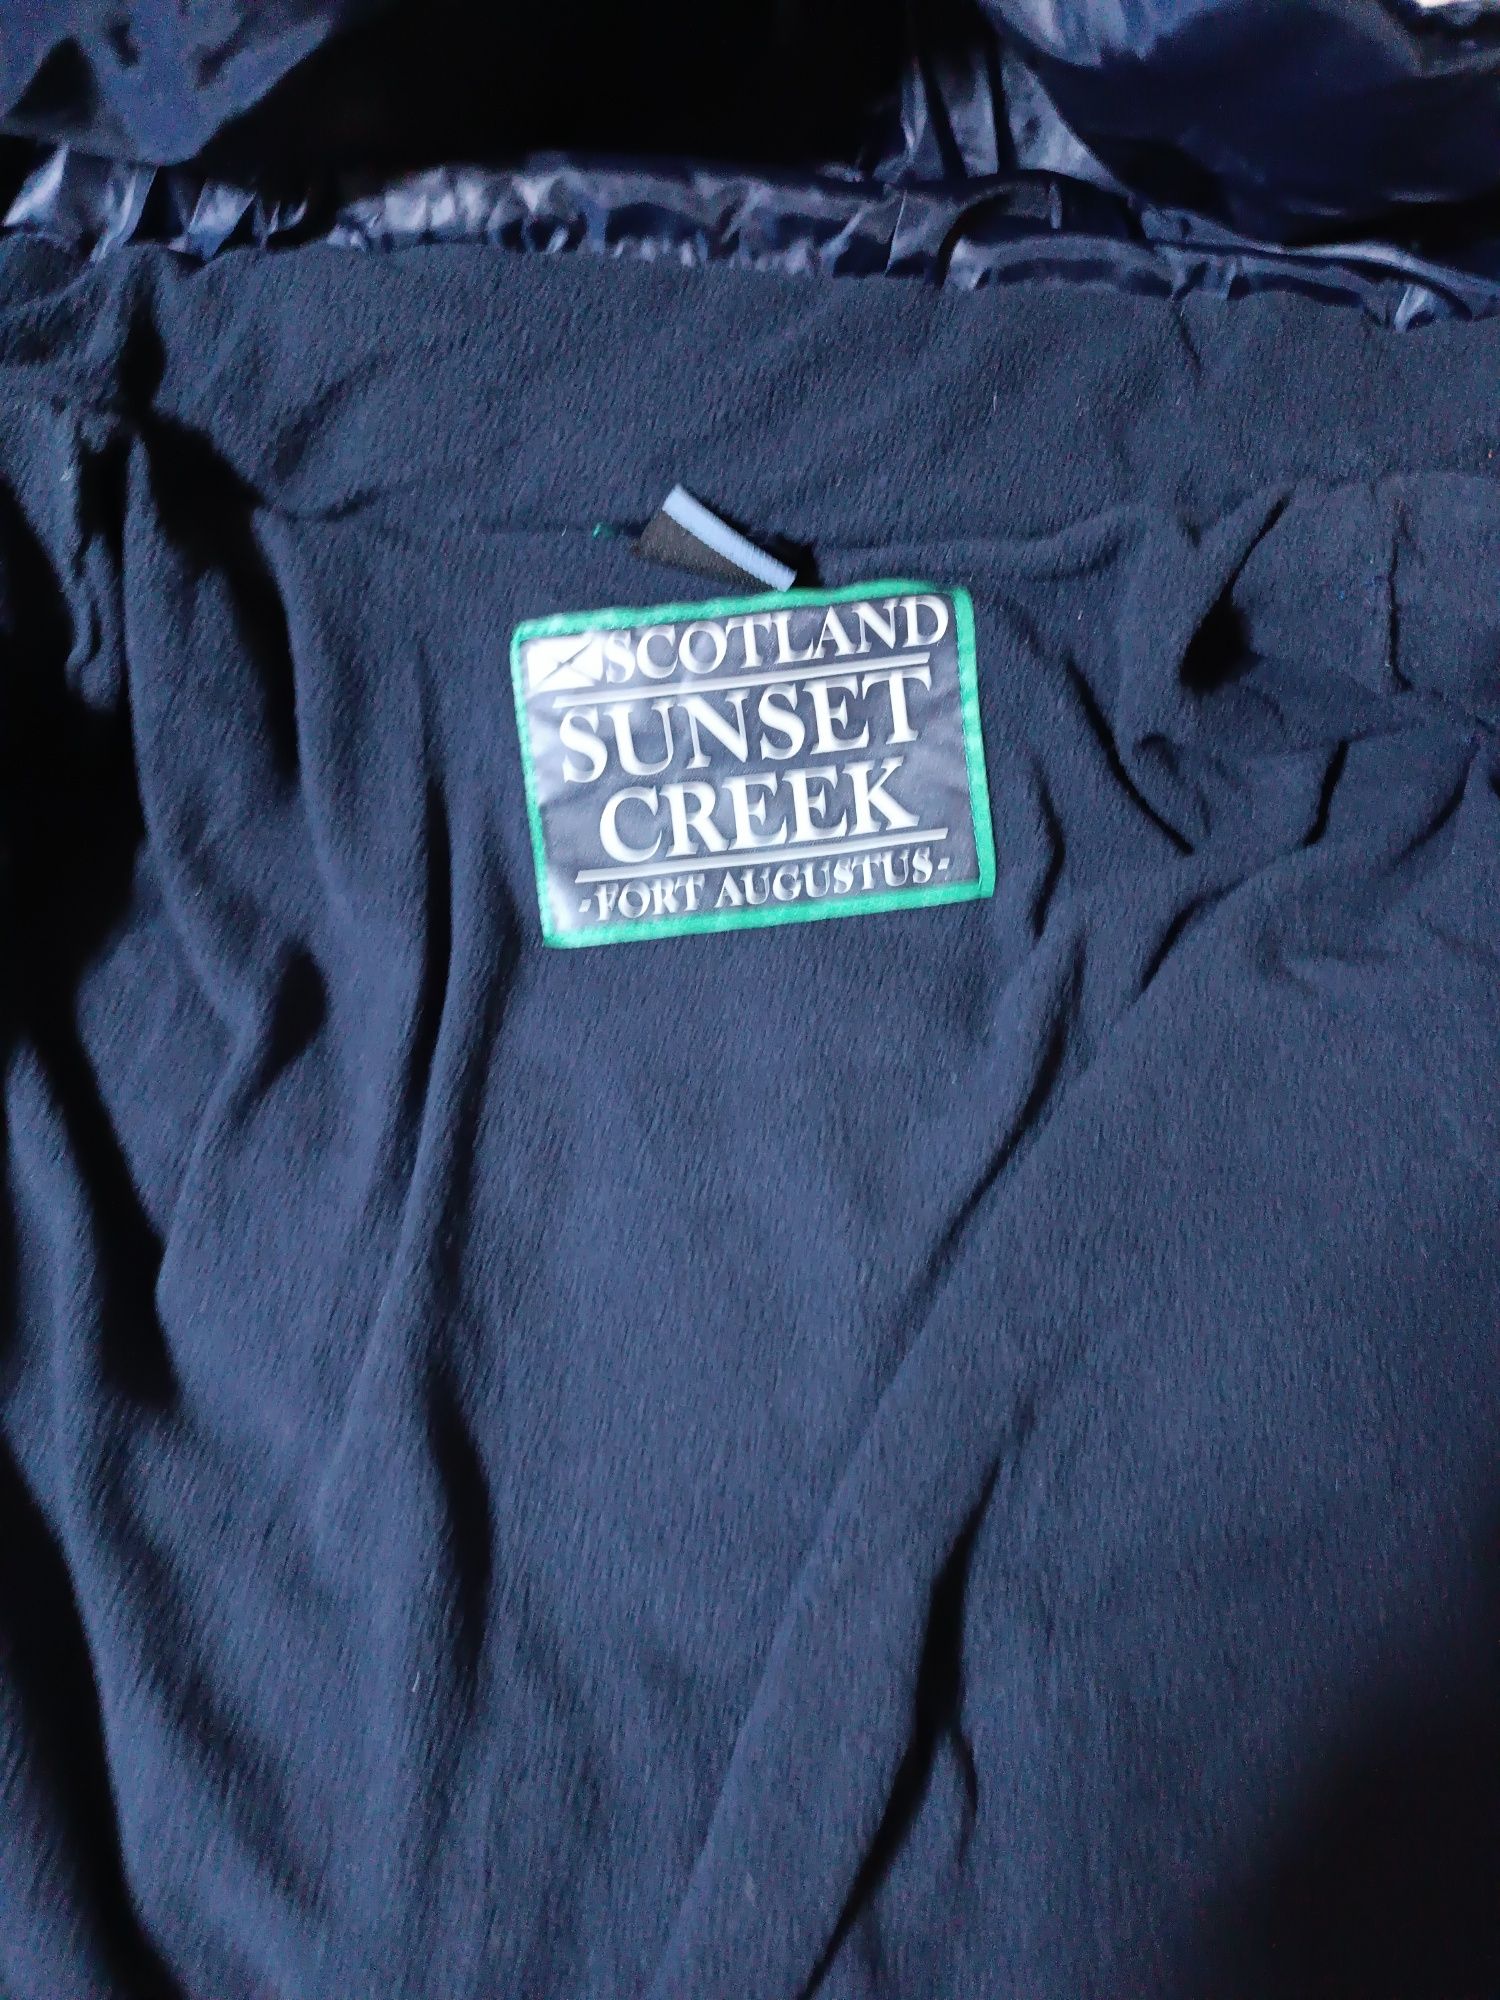 Geacă fis cu vatelina groasa de iarna ,marca Scotland  Sunset Creek. M